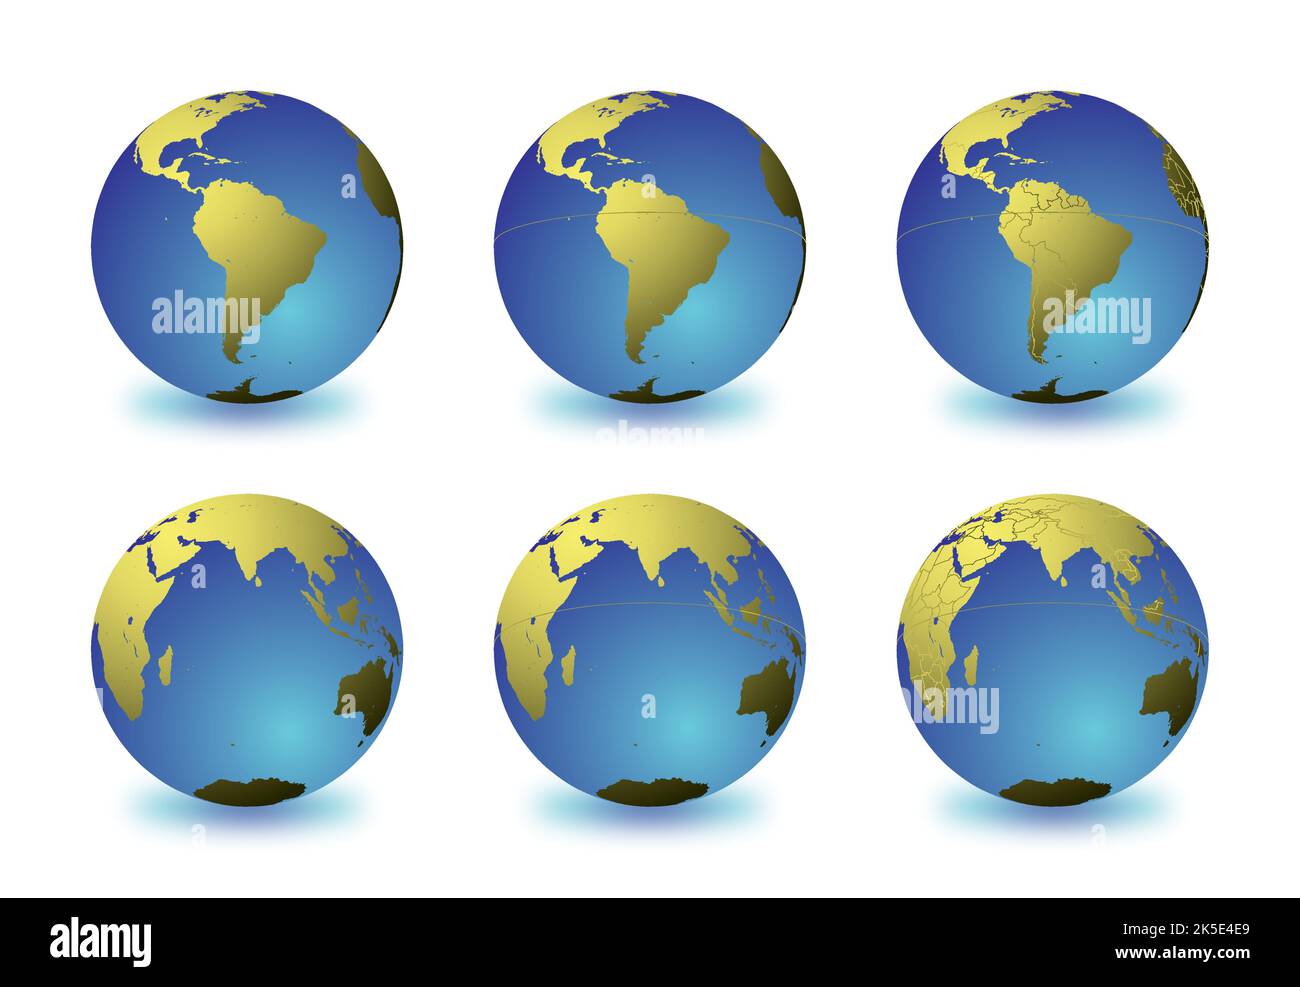 Ensemble de globes de la Terre se concentrant sur l'Amérique du Sud (rangée supérieure) et l'Océan Indien (rangée inférieure). Soigneusement superposé et groupé pour faciliter le montage. Vous pouvez Illustration de Vecteur